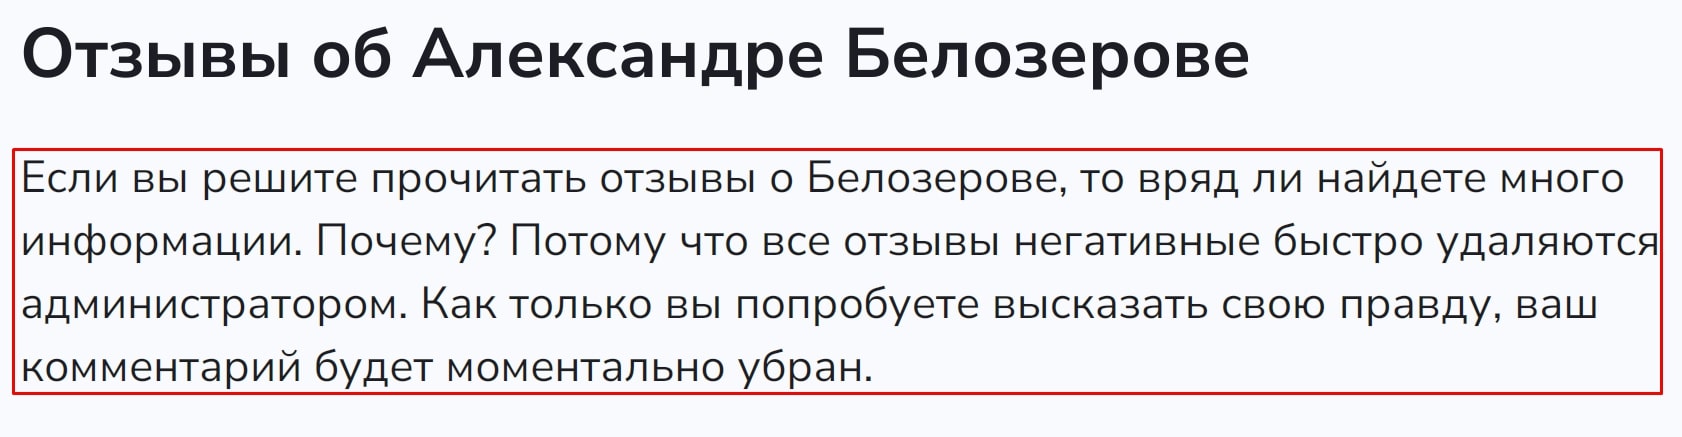 Александр Белозеров отзывы